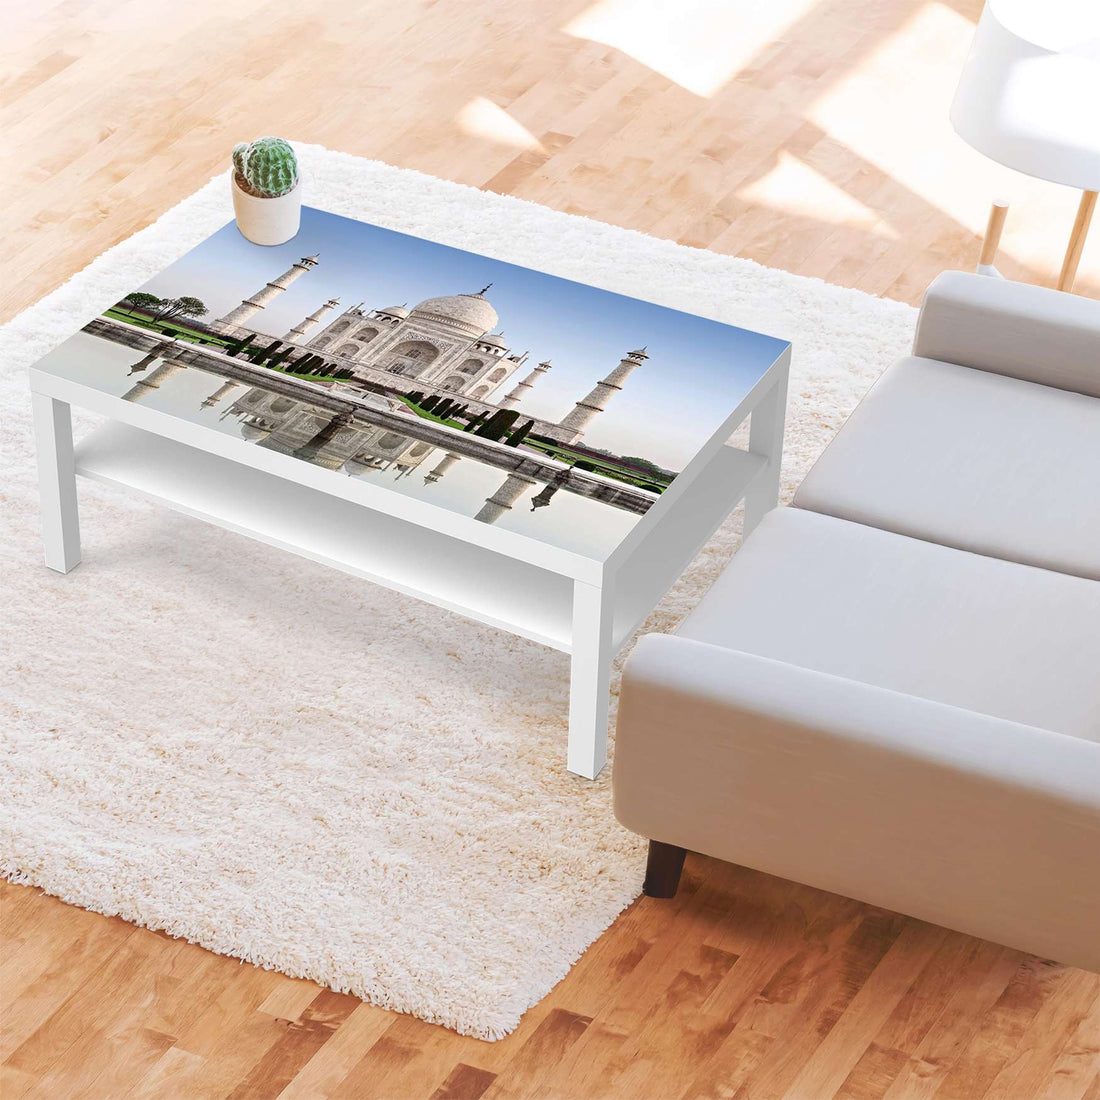 Klebefolie Taj Mahal - IKEA Lack Tisch 118x78 cm - Wohnzimmer